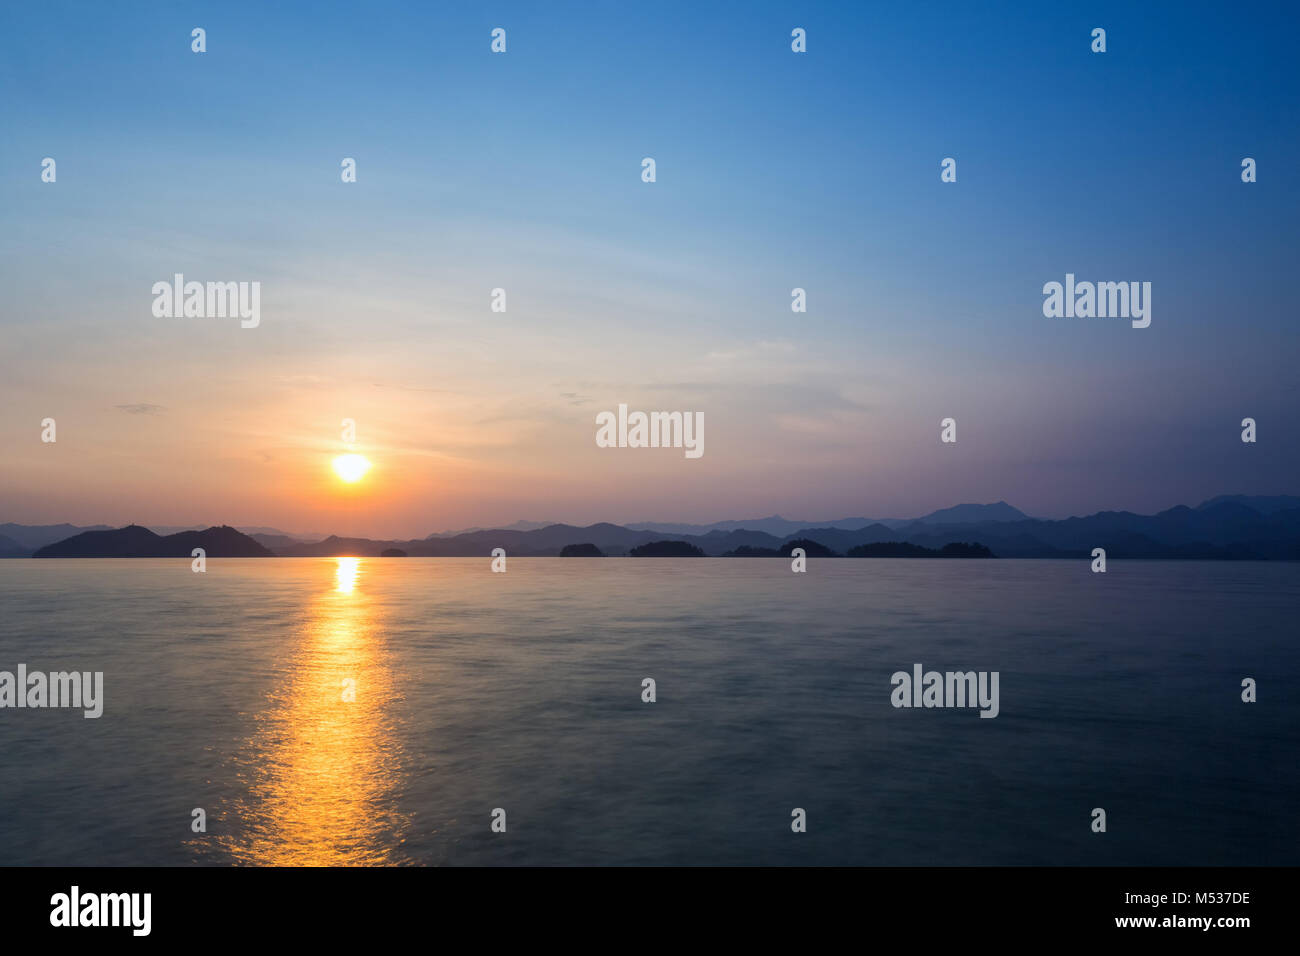 hangzhou thousand island lake at dusk Stock Photo